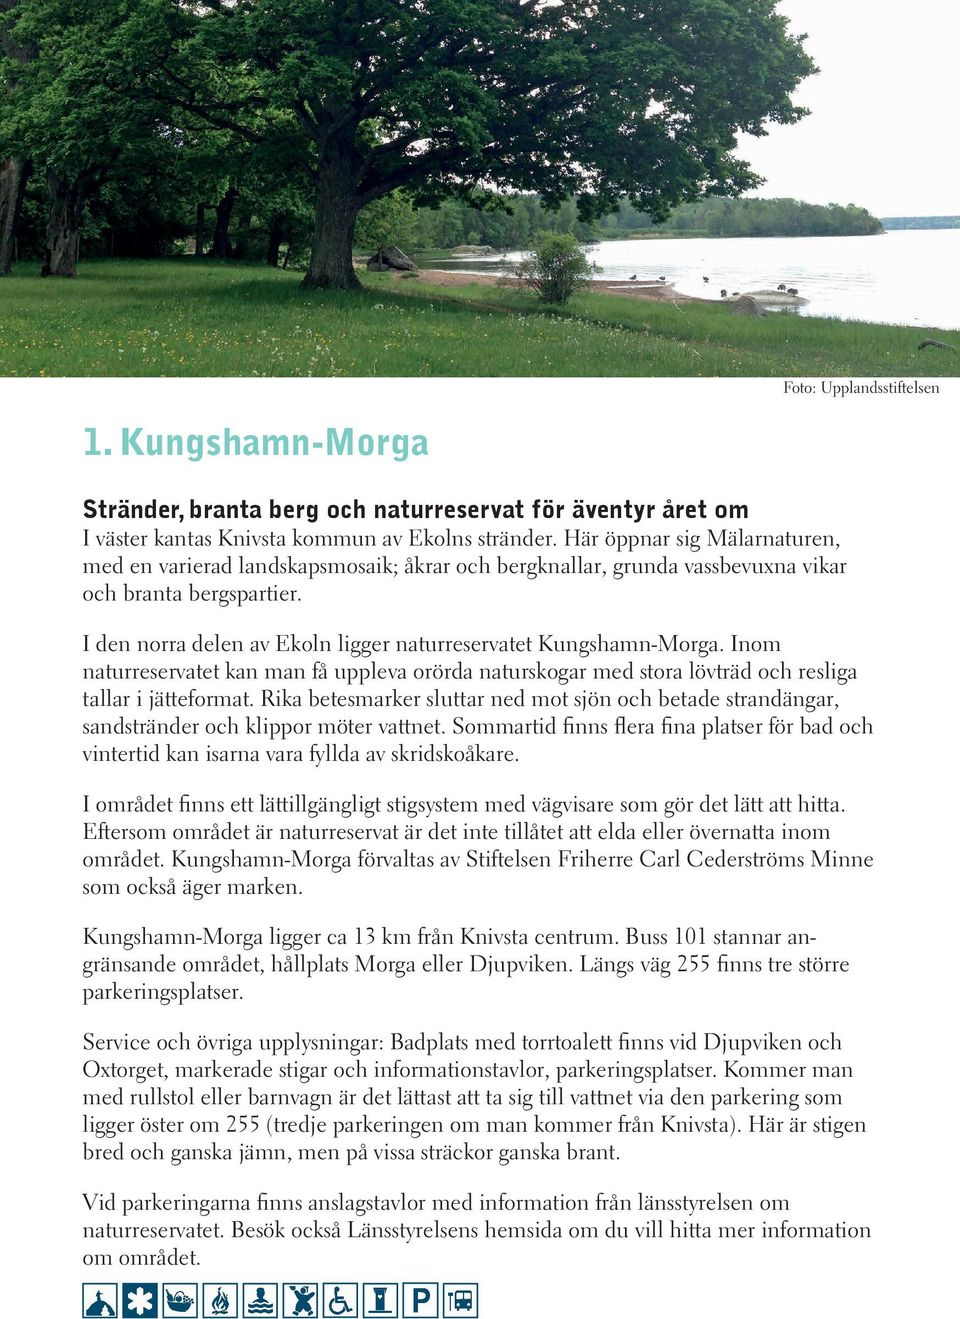 I den norra delen av Ekoln ligger naturreservatet Kungshamn-Morga. Inom naturreservatet kan man få uppleva orörda naturskogar med stora lövträd och resliga tallar i jätteformat.